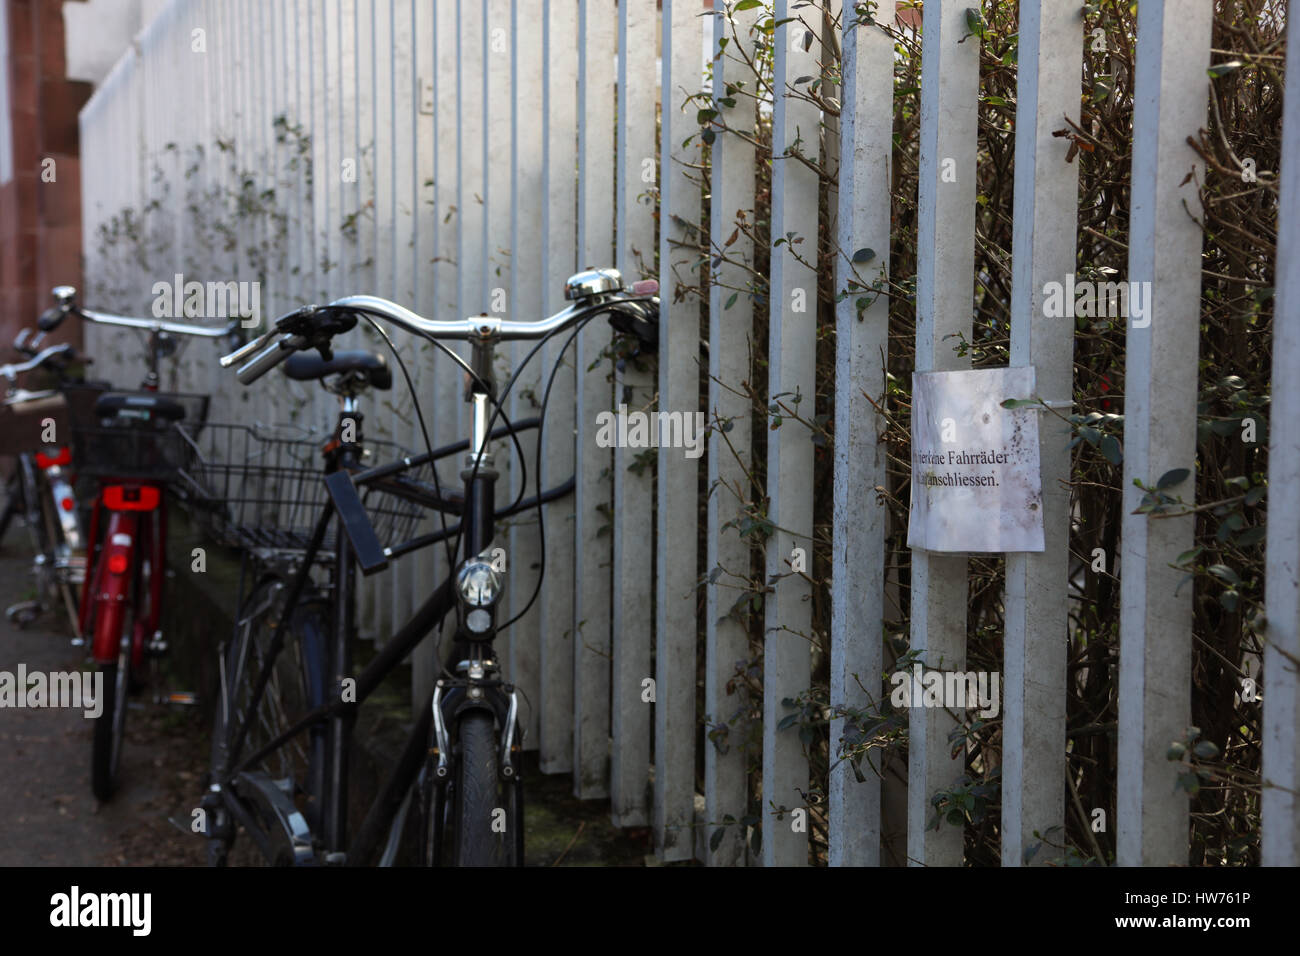 Fahrrad am Zaun abgeschlossen Foto Stock